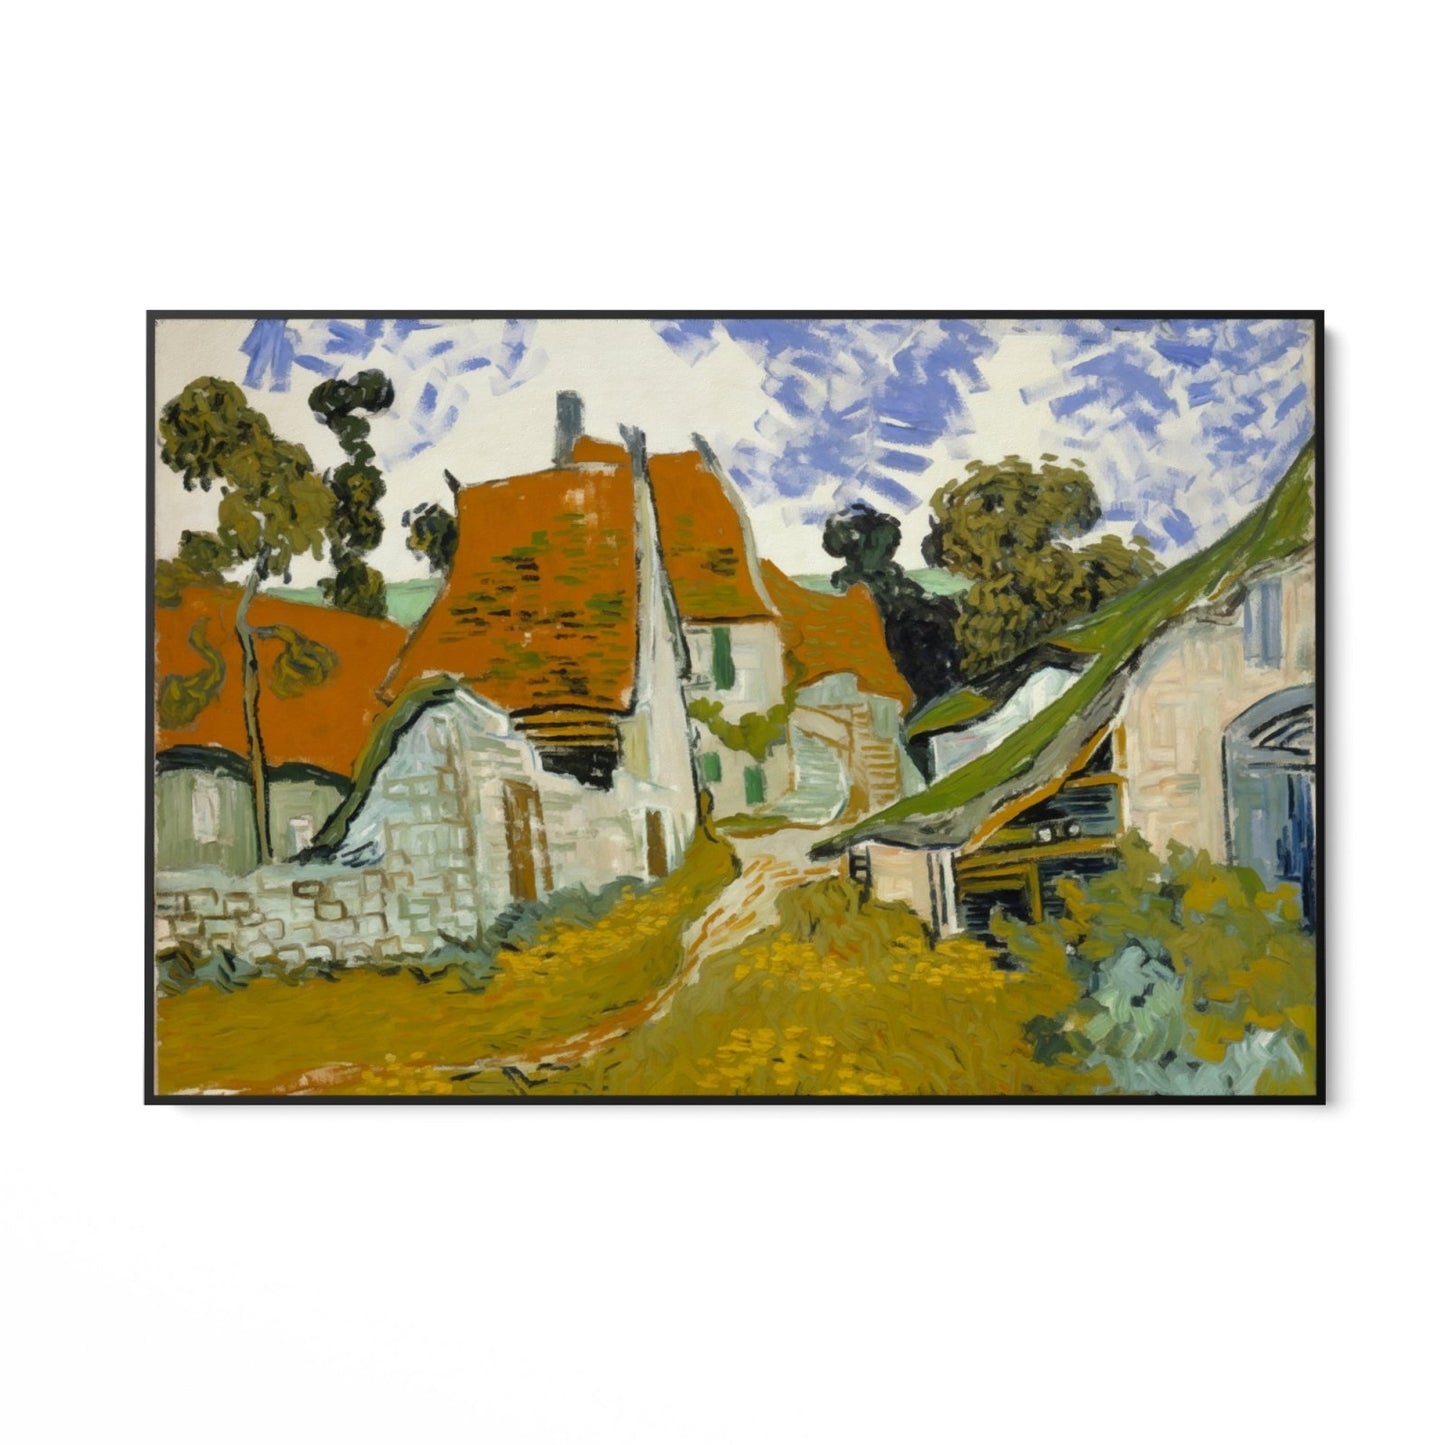 Strada din Auvers-Sur-Oise, Vincent Van Gogh